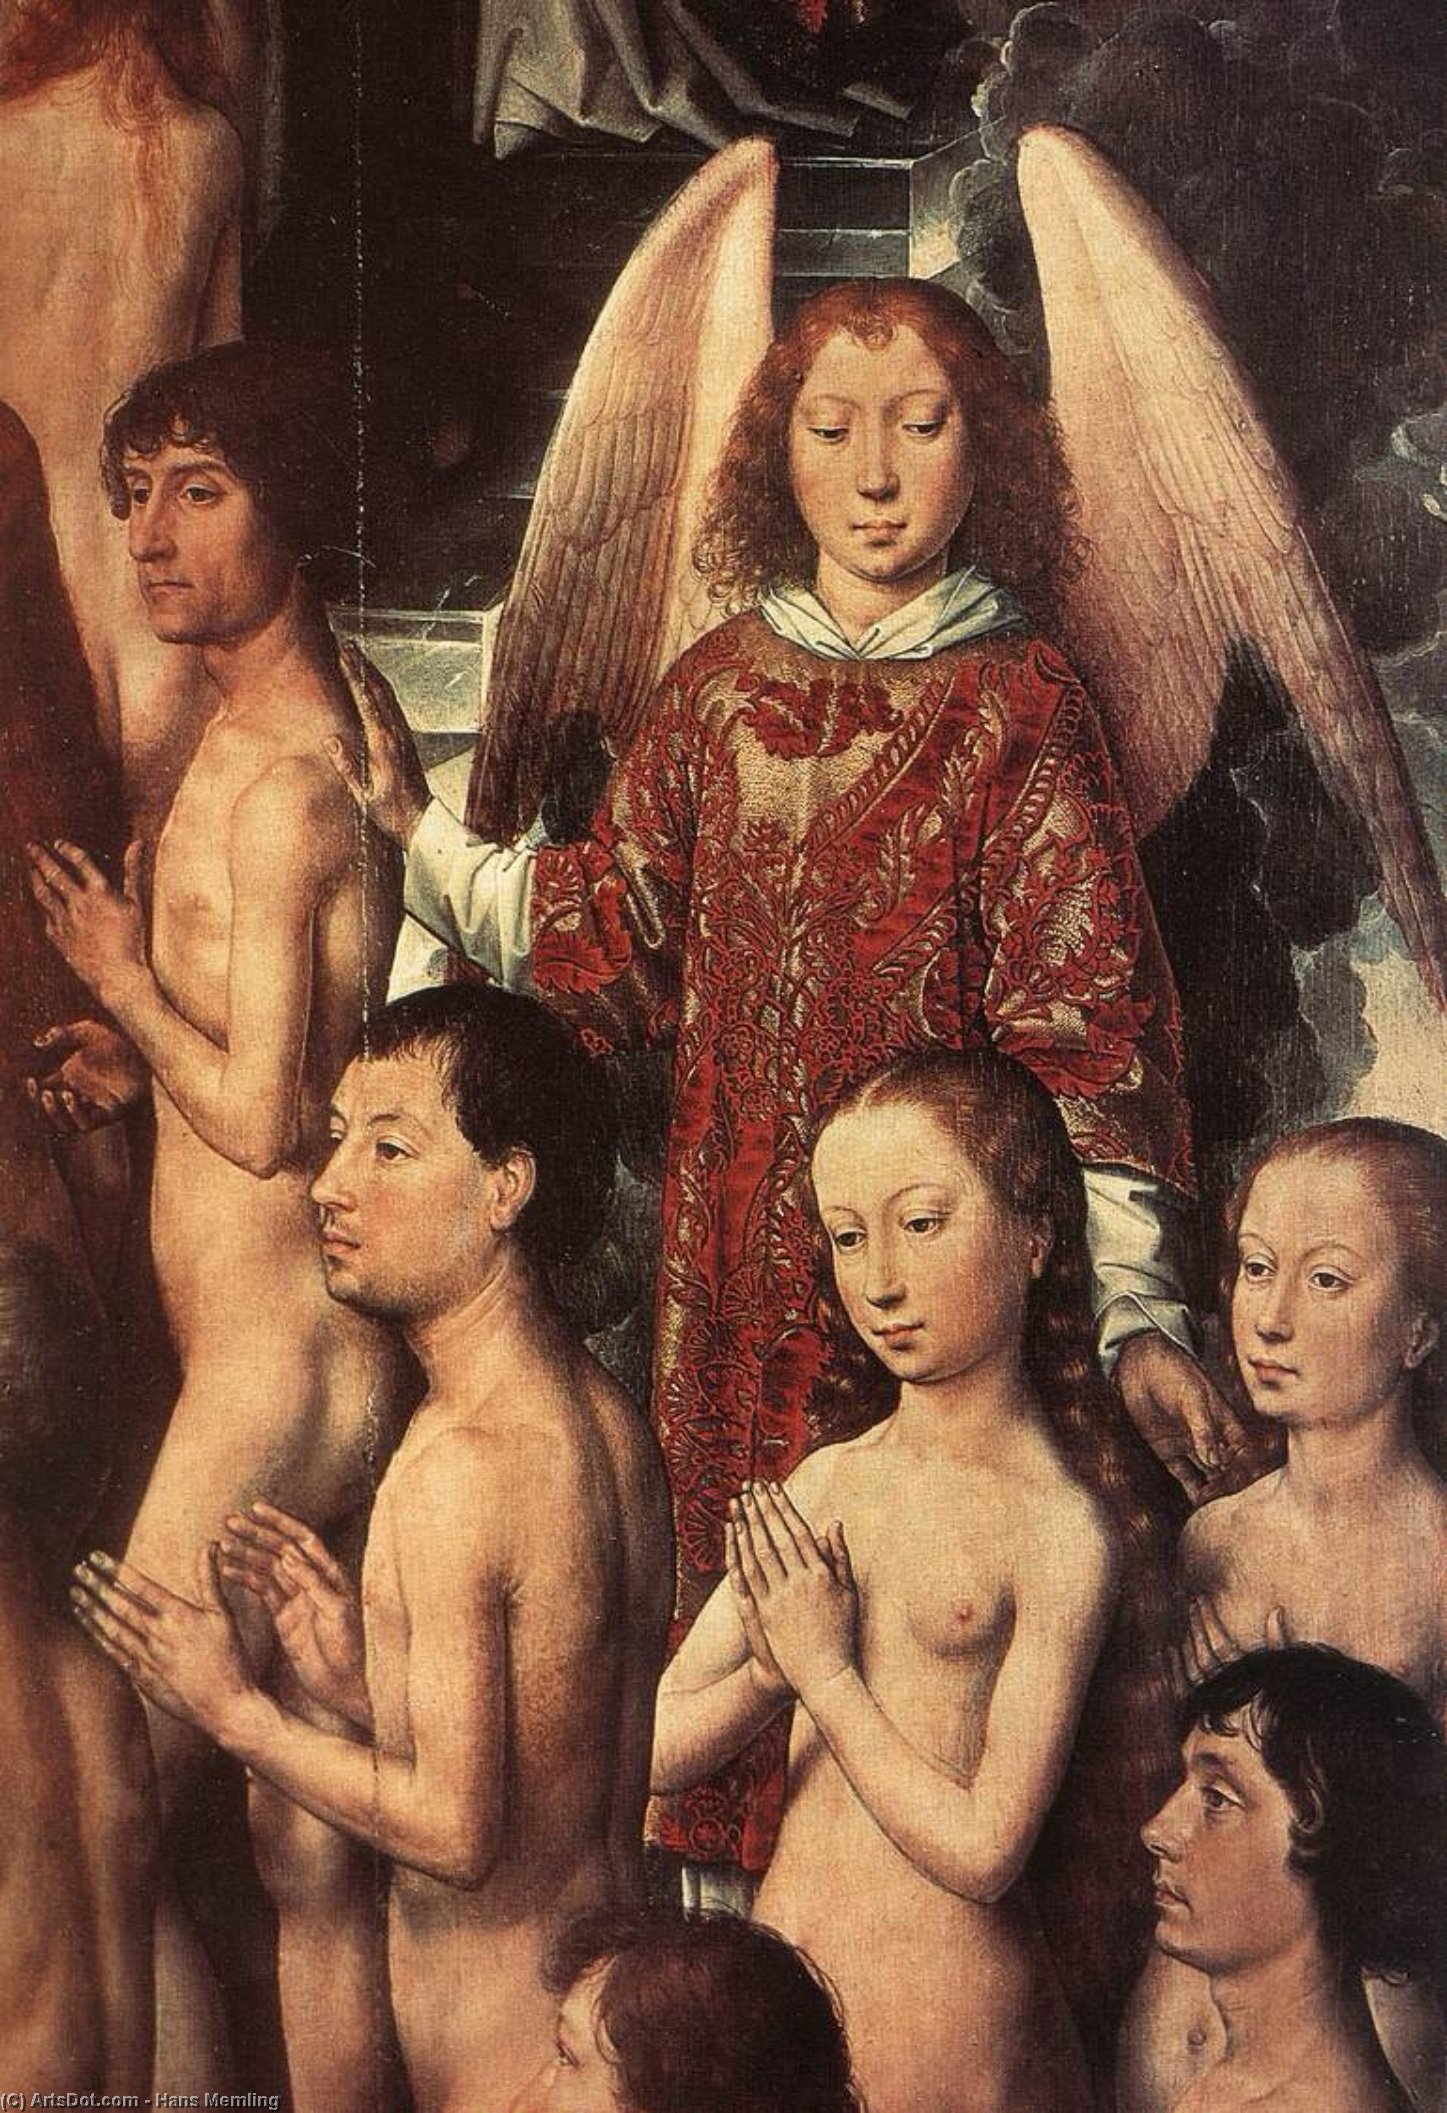 WikiOO.org - אנציקלופדיה לאמנויות יפות - ציור, יצירות אמנות Hans Memling - Last Judgment Triptych (detail) (16)